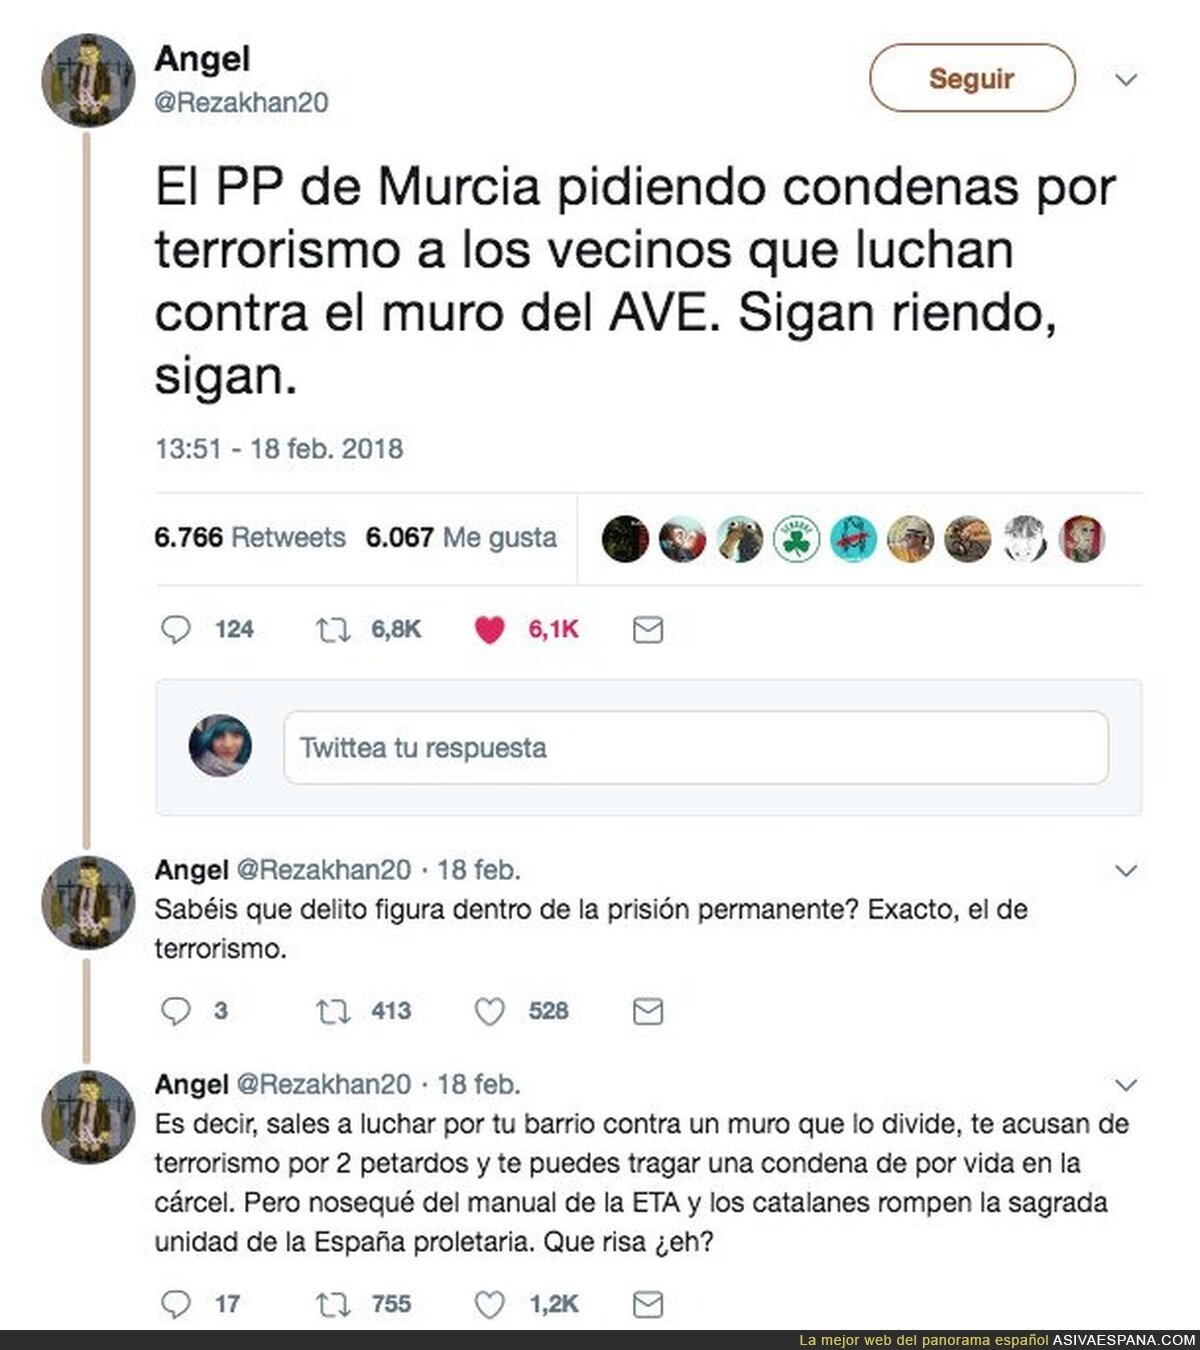 En Murcia el PP quieren condenar por terrorismo a los vecinos que luchan contra el muro